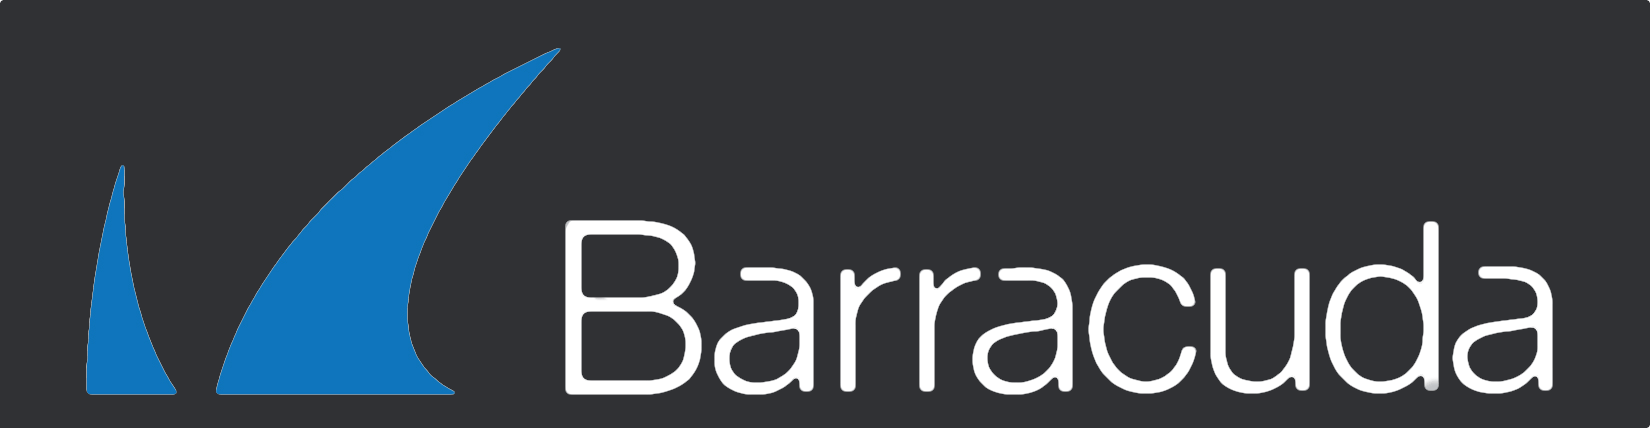 Barracuda Networks Logo - Barracuda Appliance Control